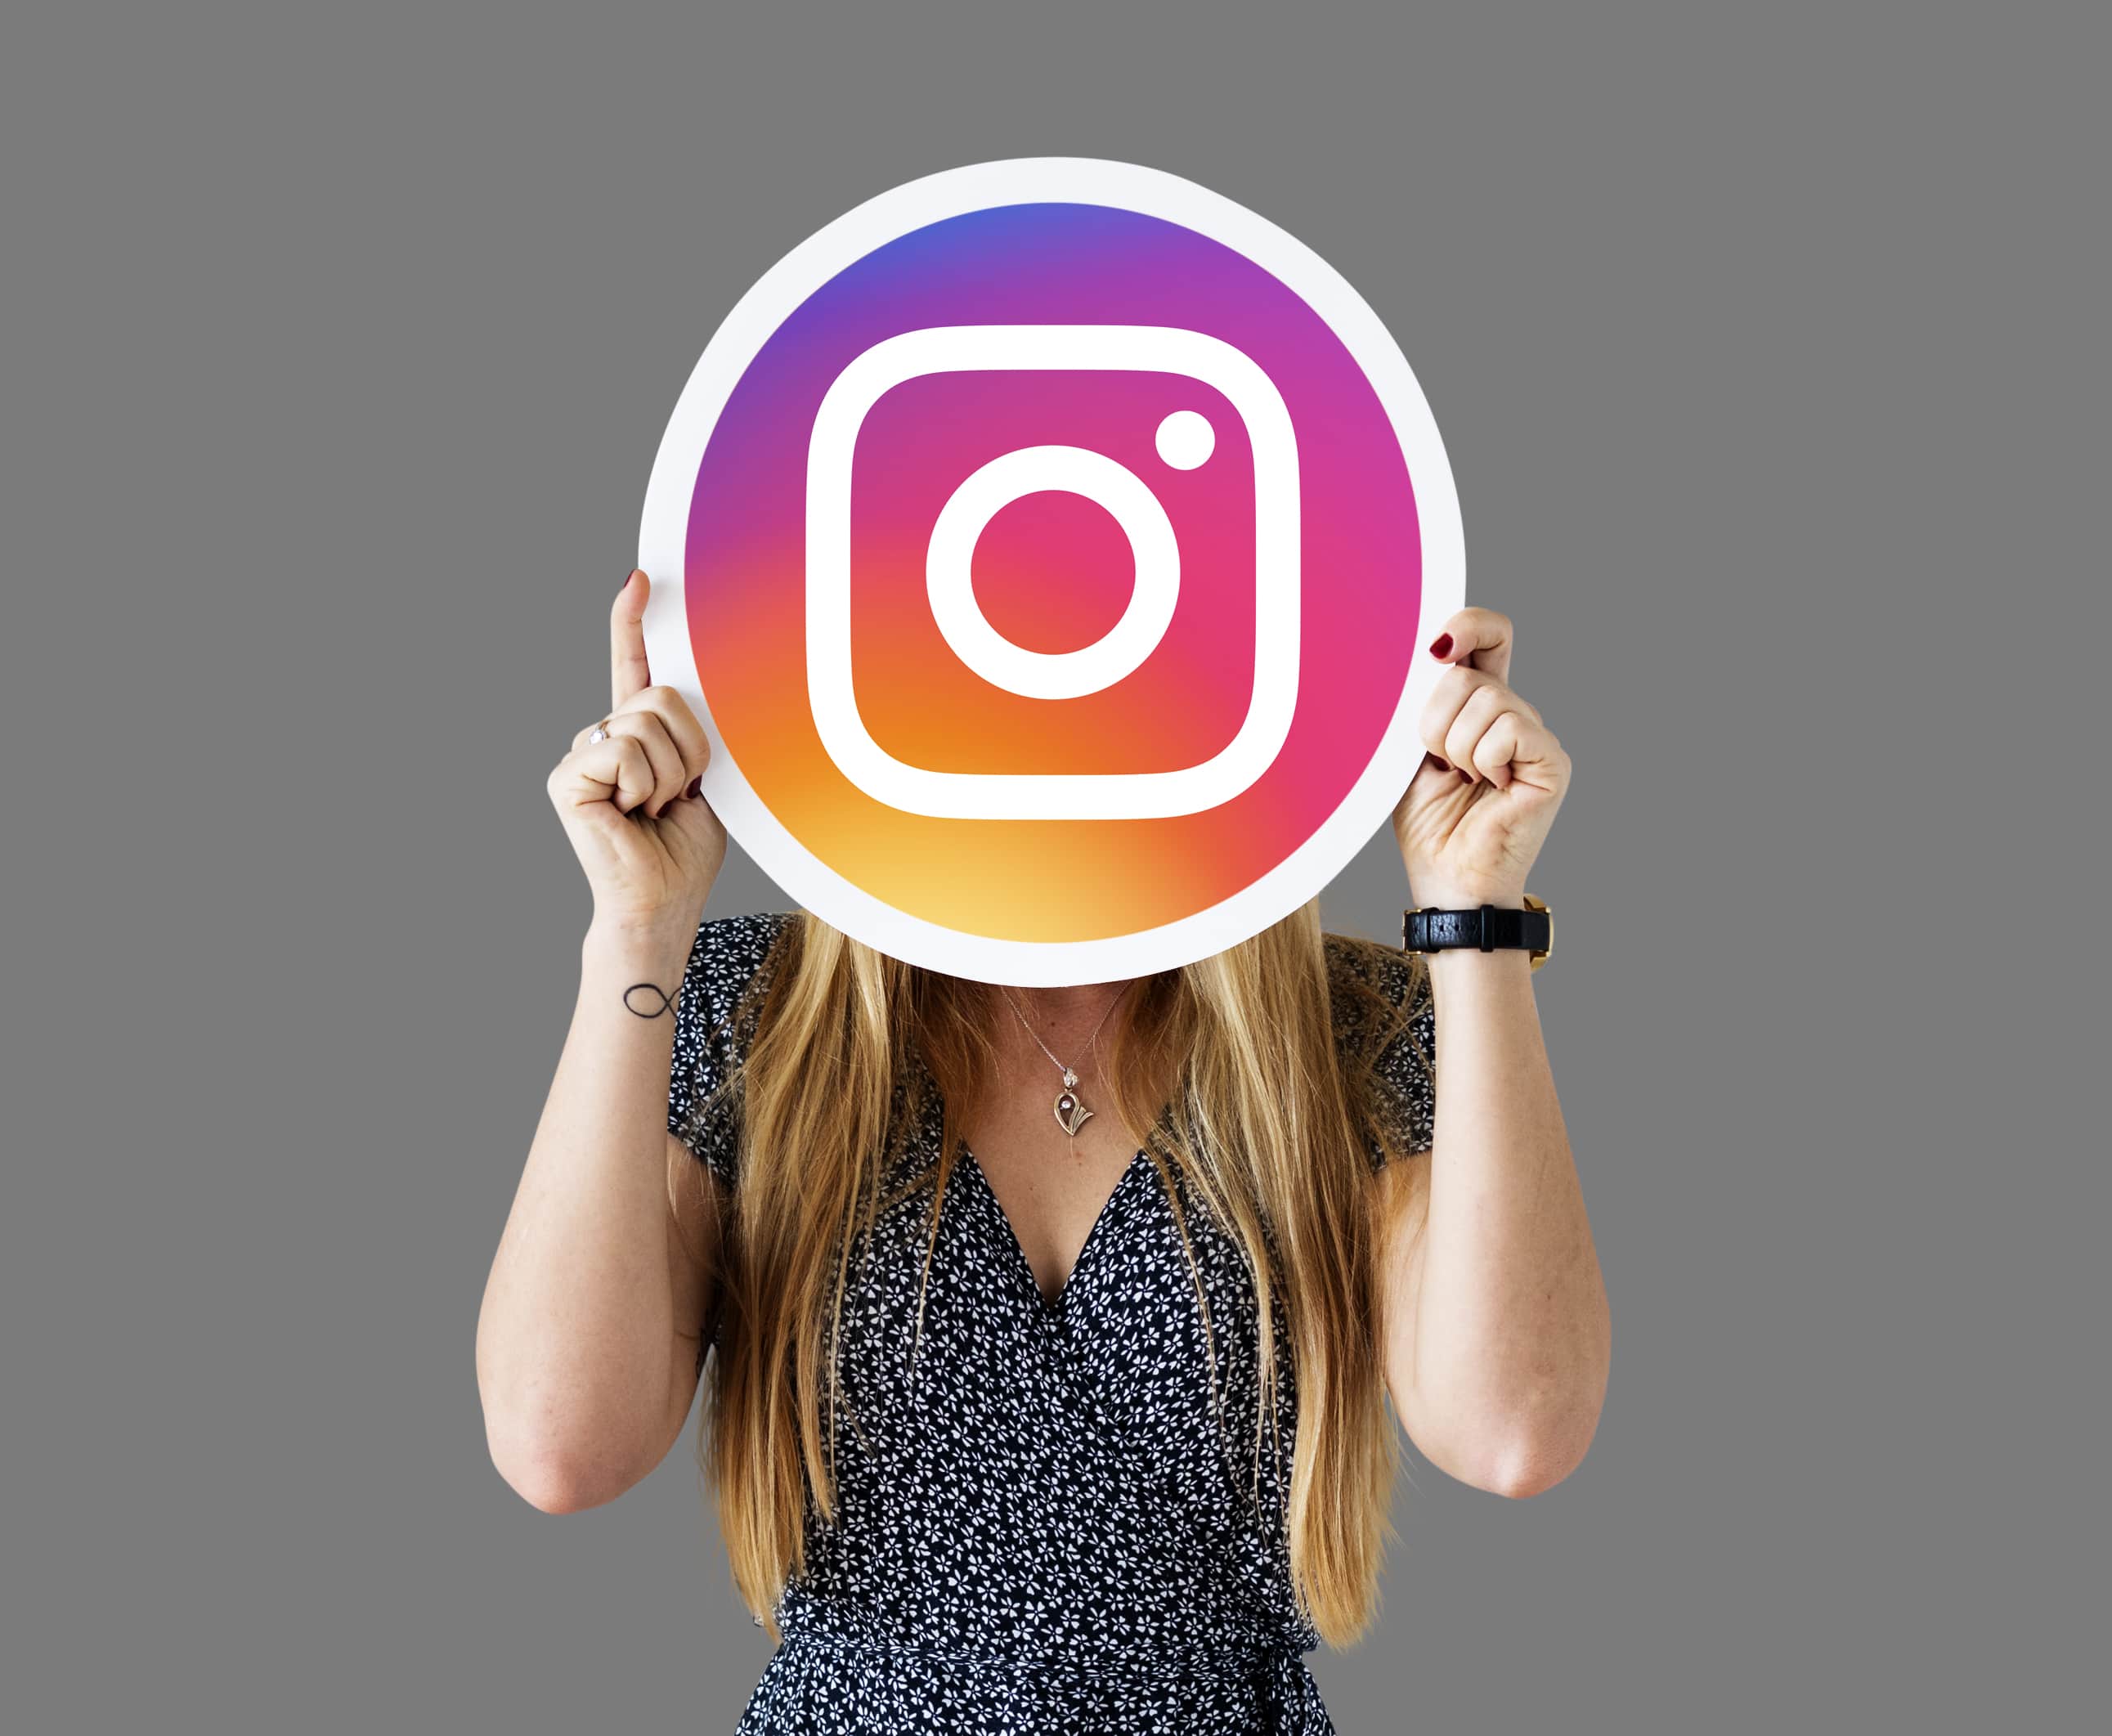 Satılık Instagram Hesapları